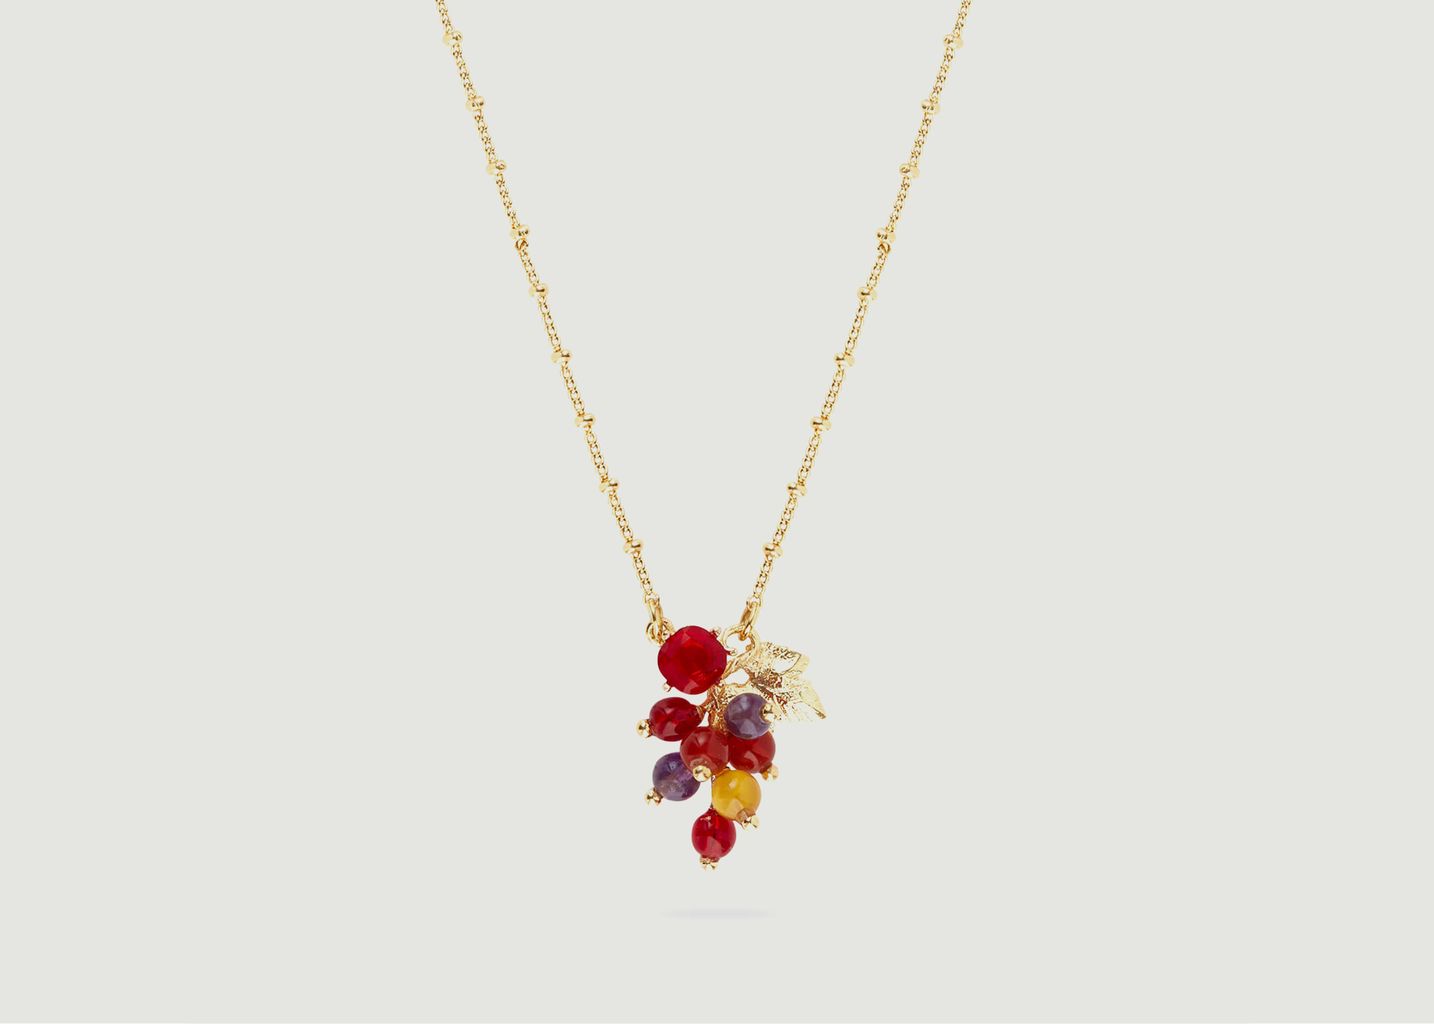 Thin necklace with grapes and vine leaf pendant - Les Néréides